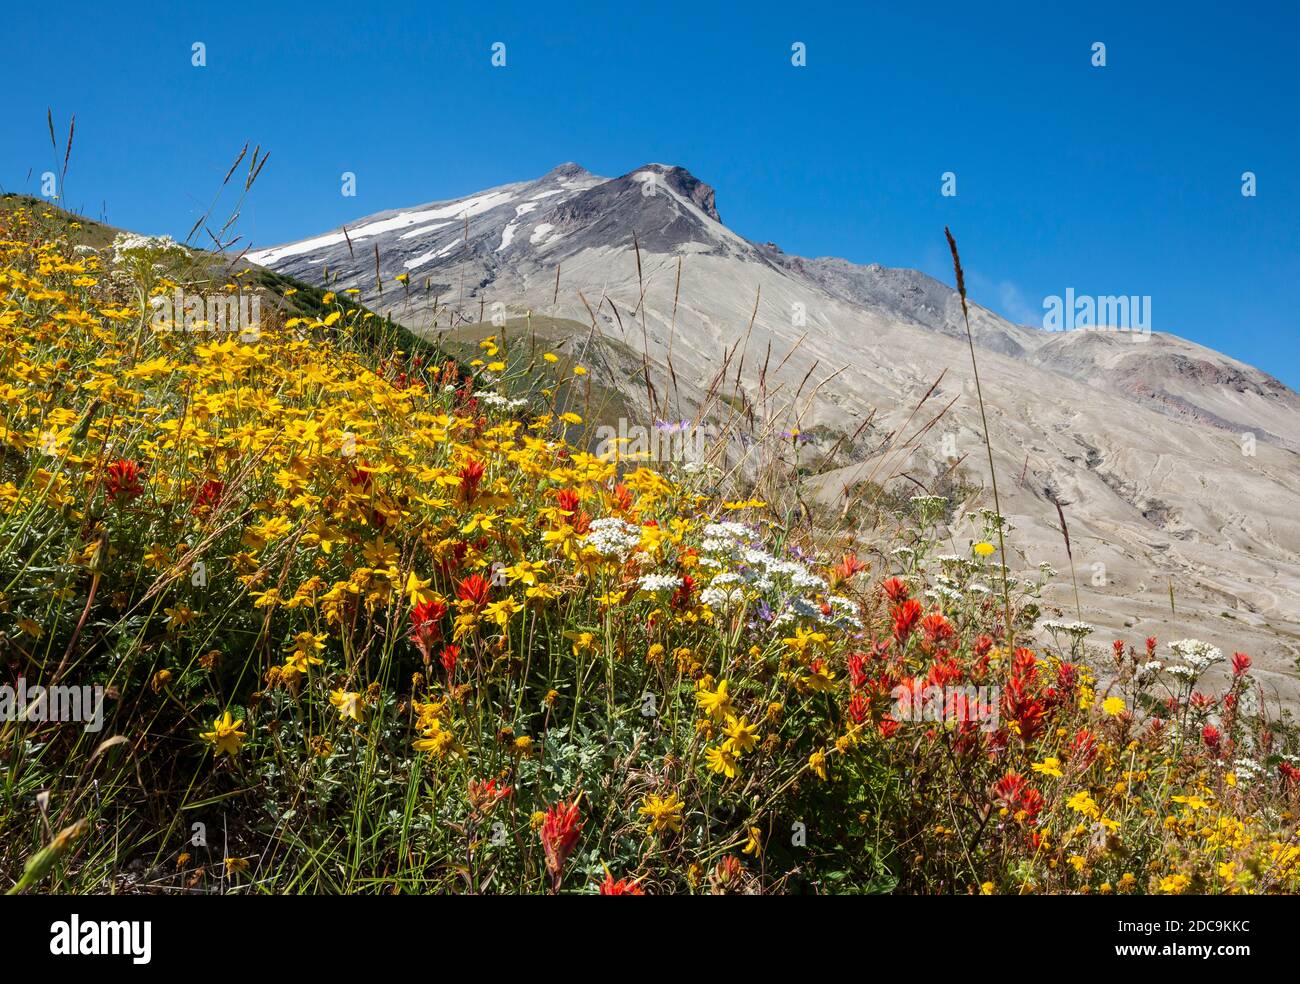 WA18302-05...WASHINGTON - farbenfrohe Wildblumen blühen 40 Jahre nach dem Ausbruch des Mount St Helens im Mount St Helens National Volcanic Monument. Stockfoto